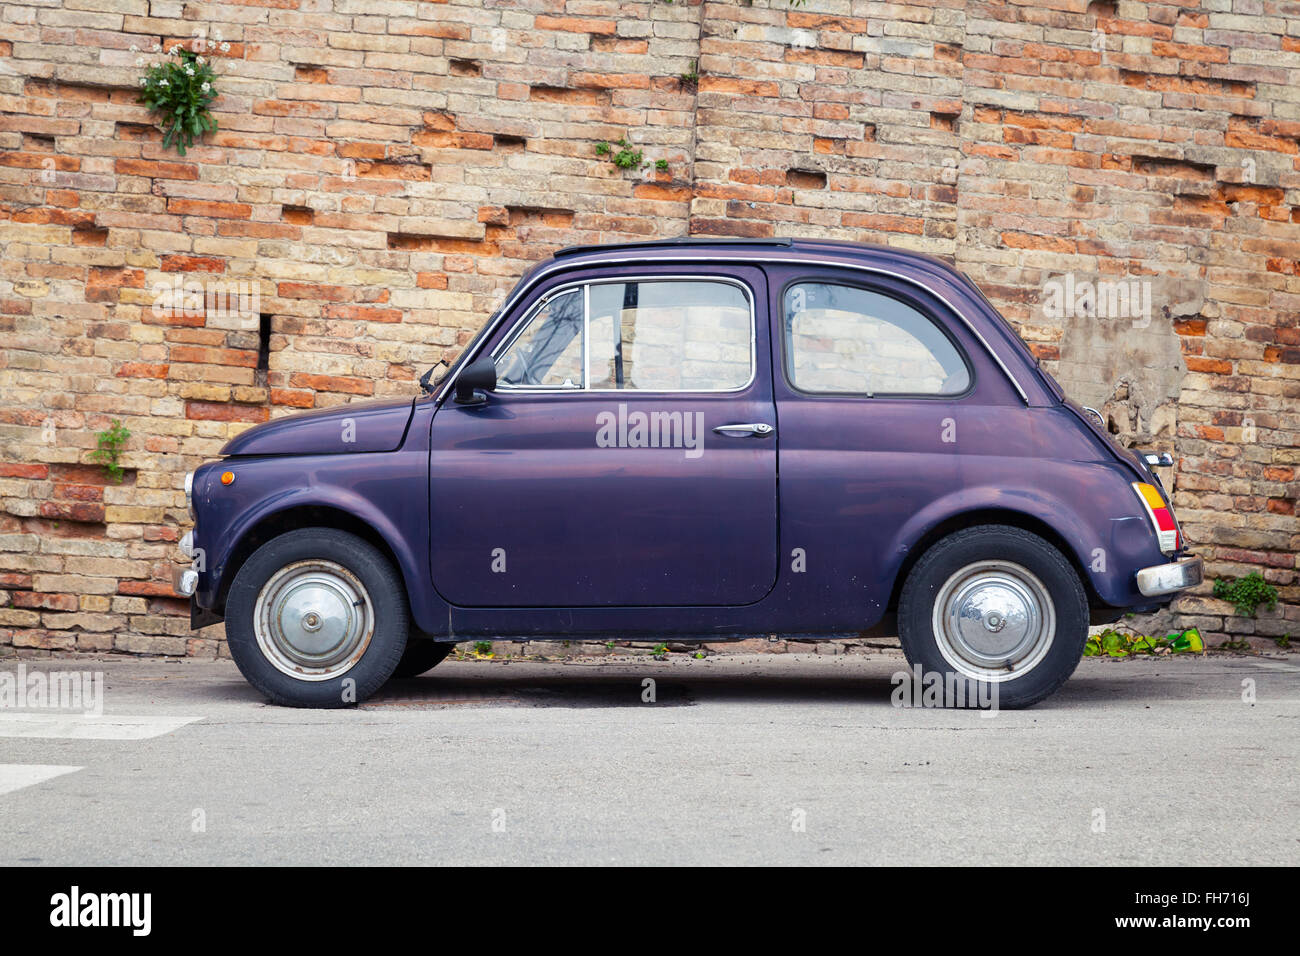 Fermo, Italia - 11 de febrero de 2016: Viejo Fiat Nuova 500 city car producido por el fabricante italiano Fiat entre 1957 y 1975 Foto de stock